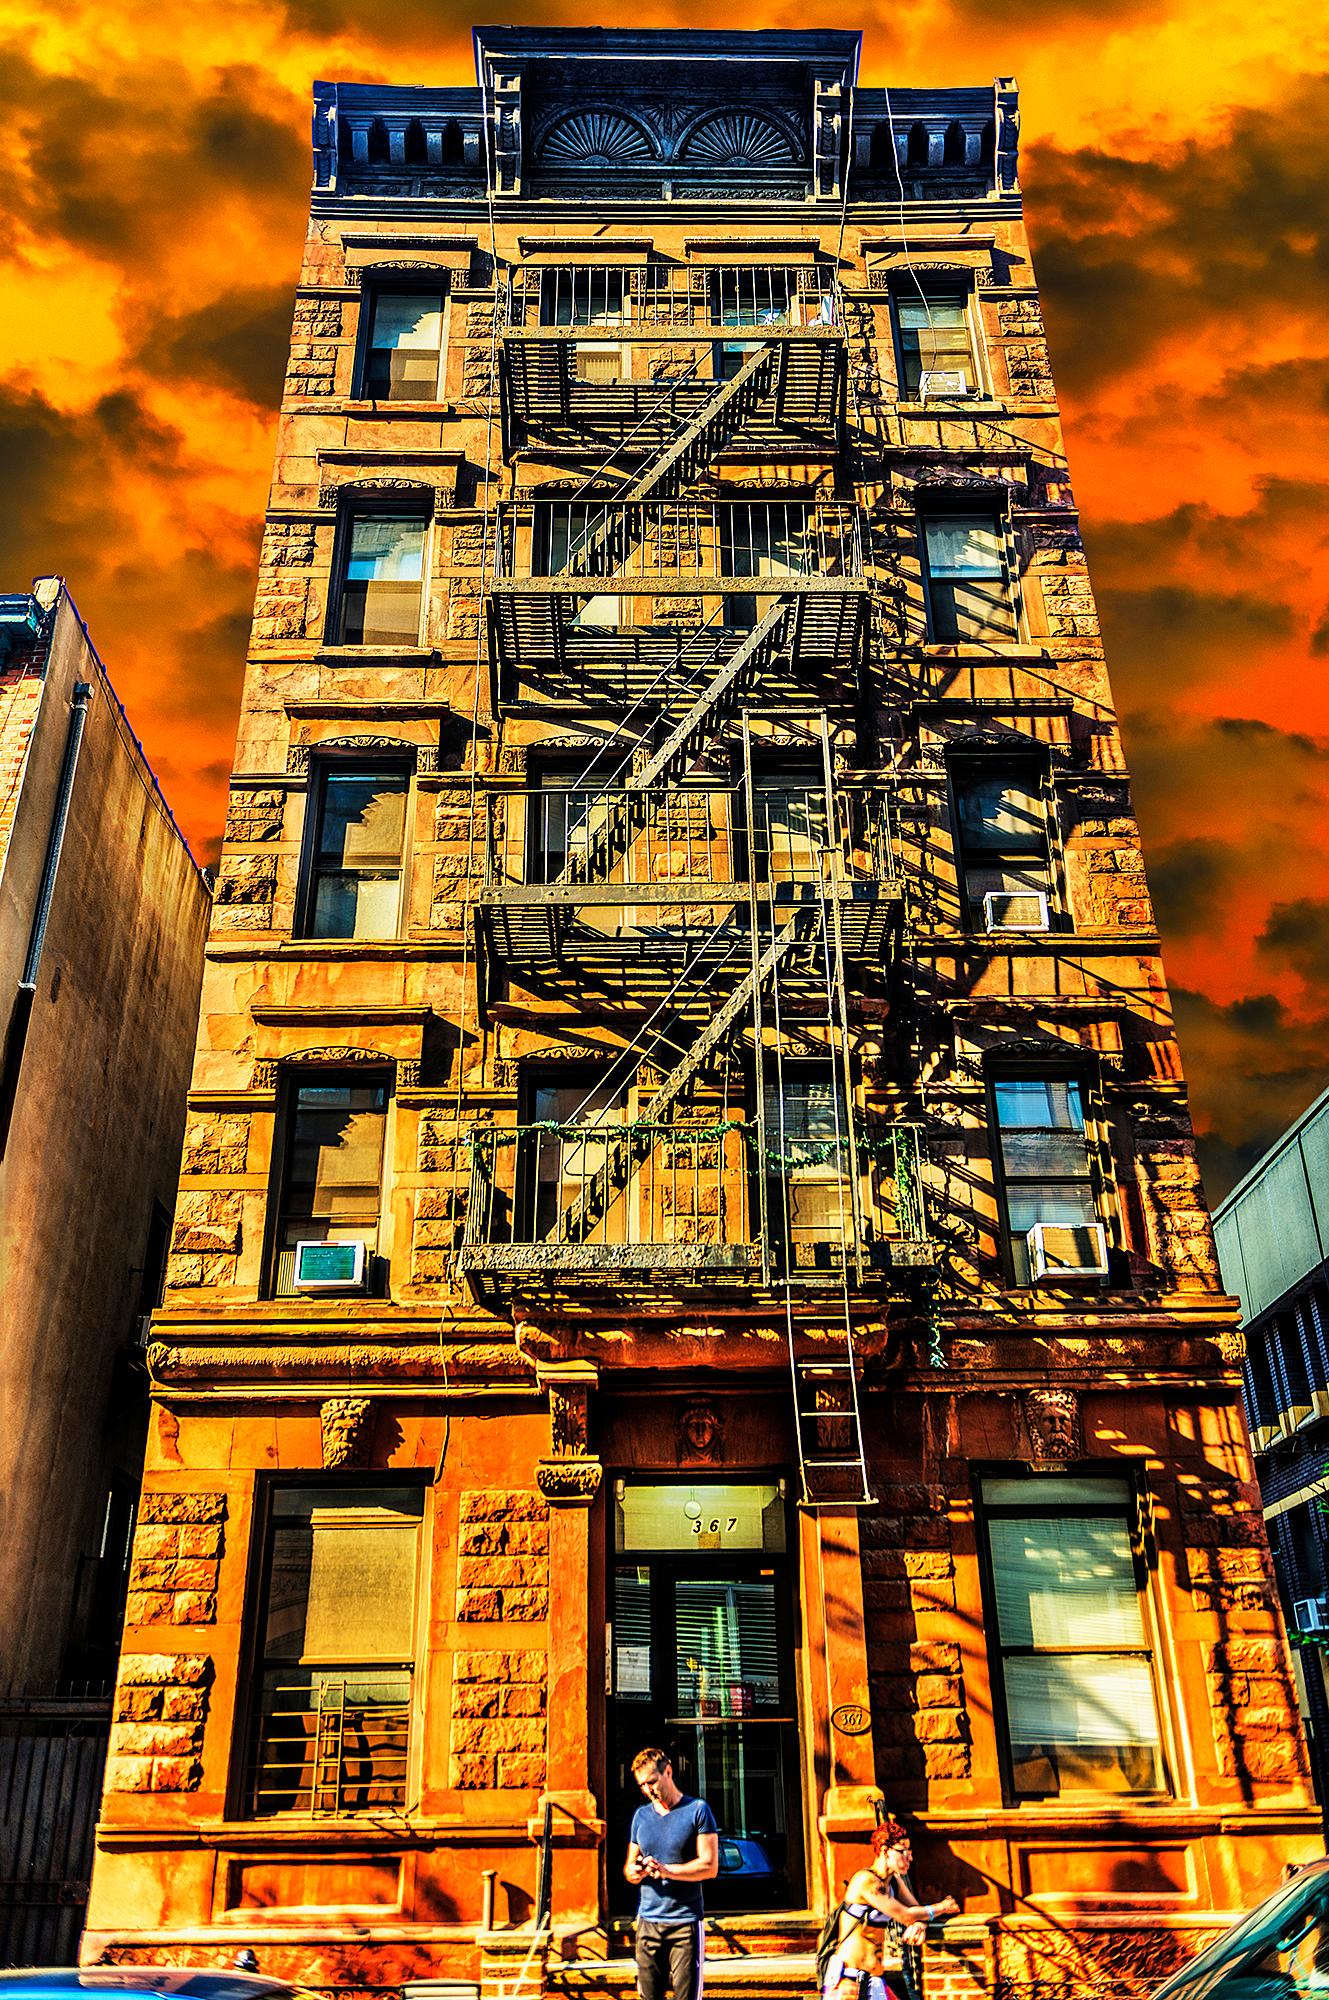 Der Straßenfotograf Mitchell Funk fotografiert ein altes Hochhaus in Hell's Kitchen von oben mit goldenem, glitzerndem Licht vor einem heißen Himmel. Die warmen Farben sind eine vage Anspielung auf den Namen des Bezirks. Aber als Straßenfoto in der